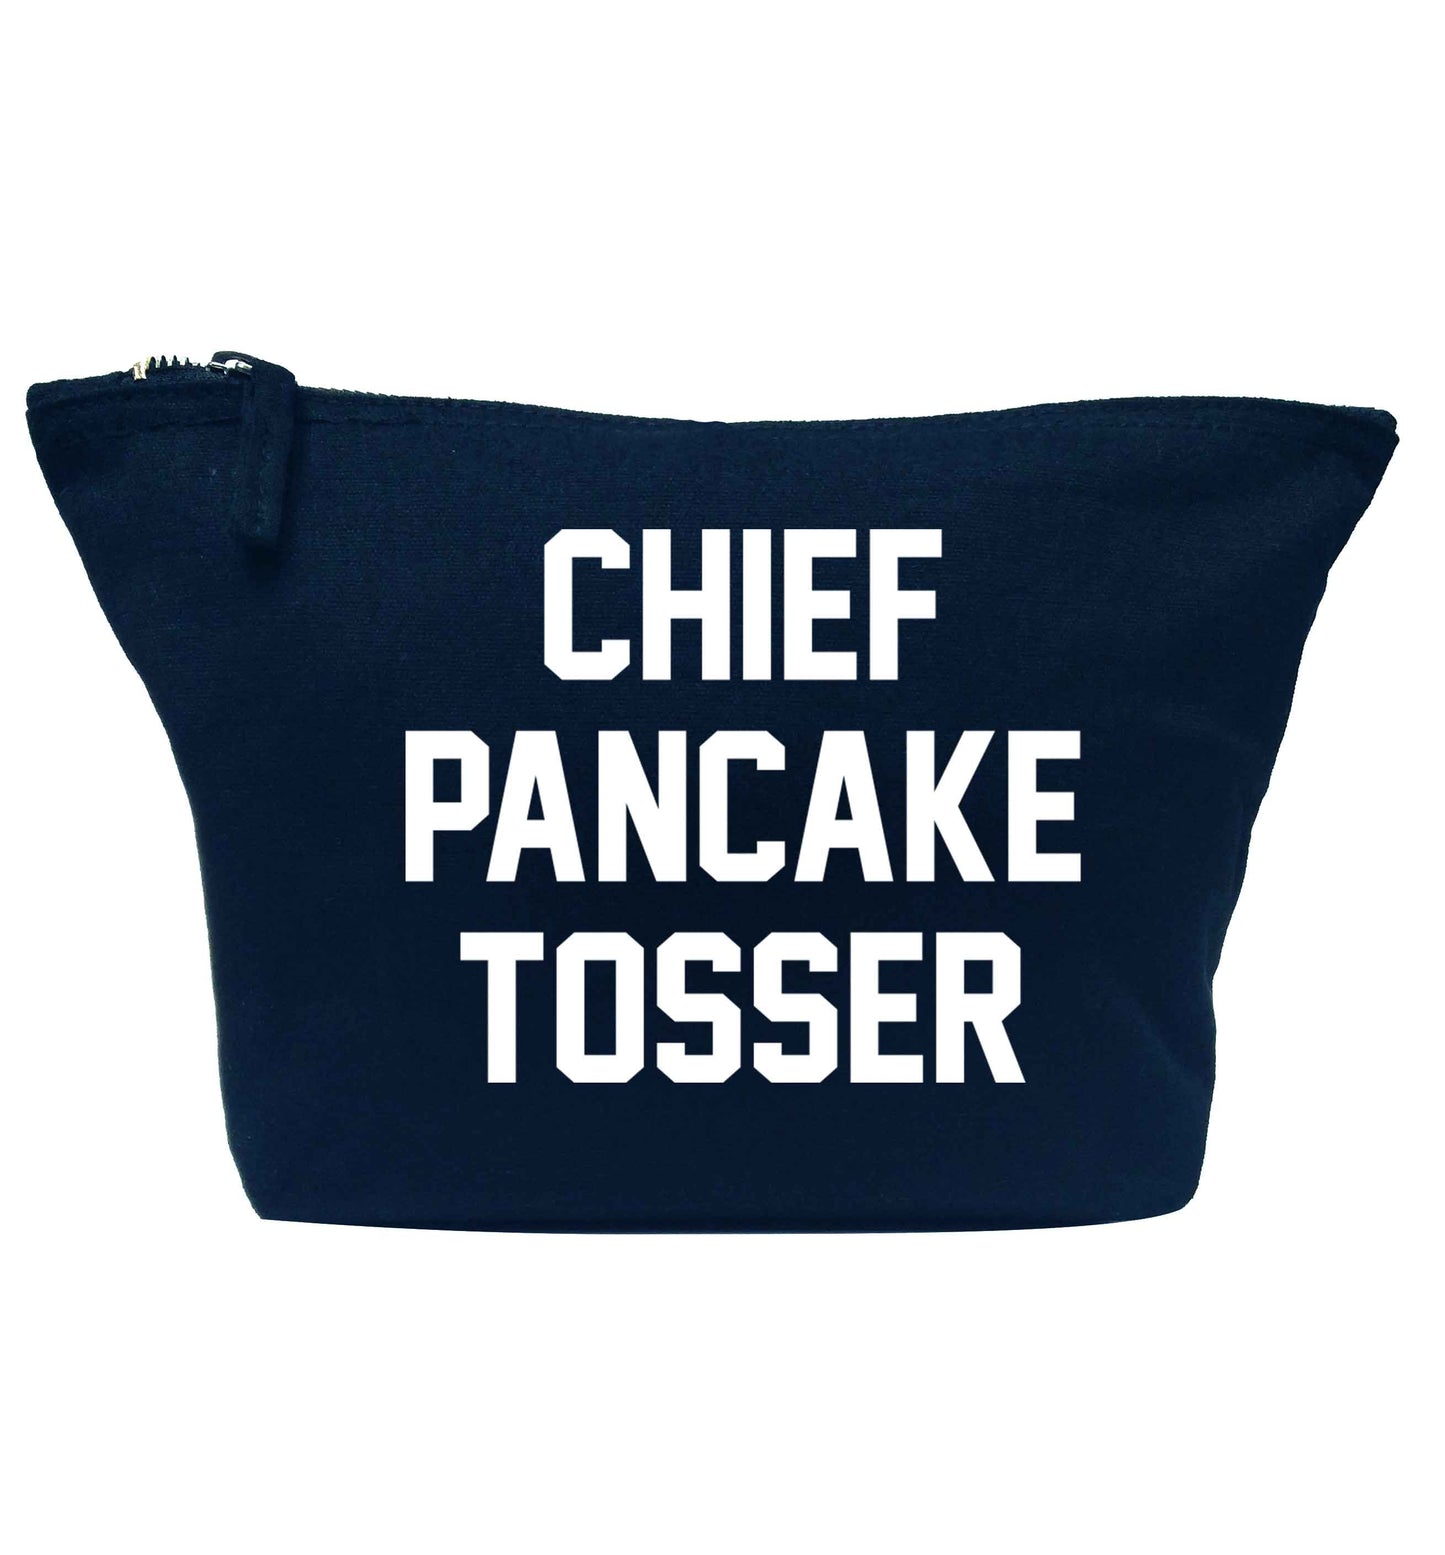 Chief pancake tosser navy makeup bag